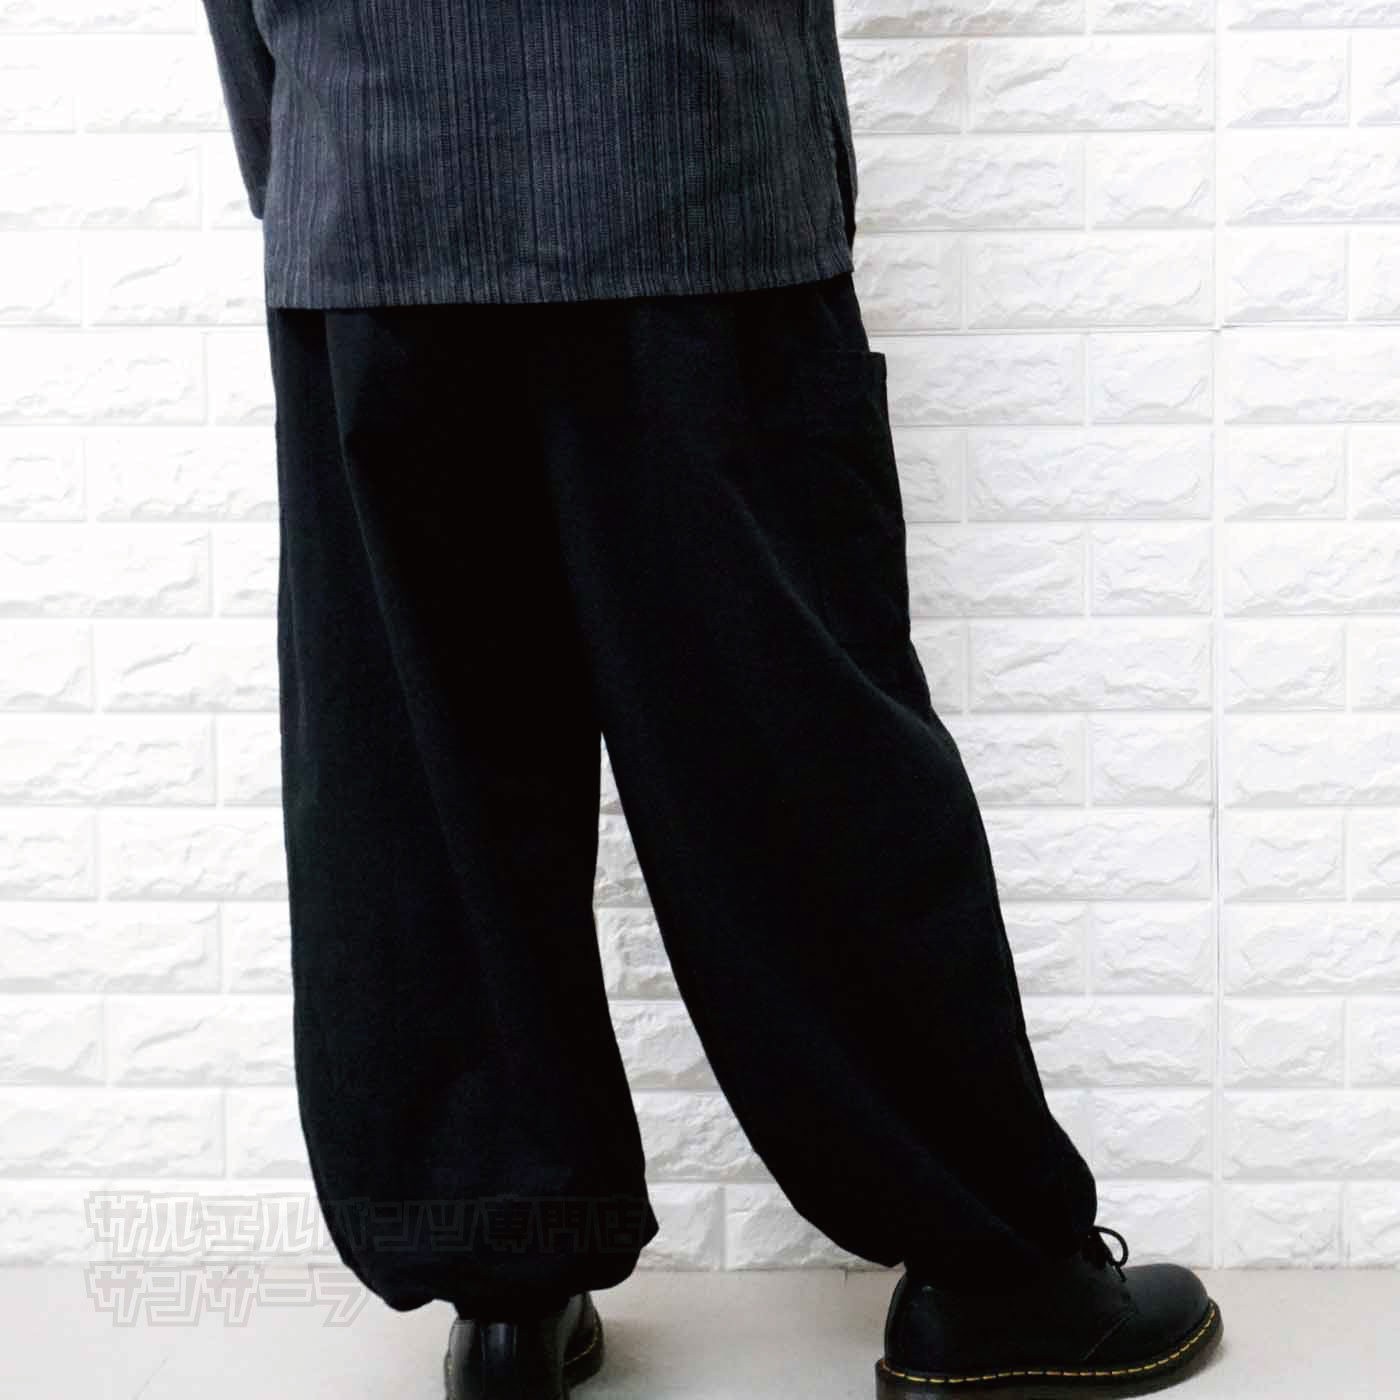 サルエルパンツ カーゴパンツ アラジンパンツ ヒンディー 文字 メンズ レディース 大きいサイズ ヨガ ダンス 柄 エスニック アジアン ファッションブラック